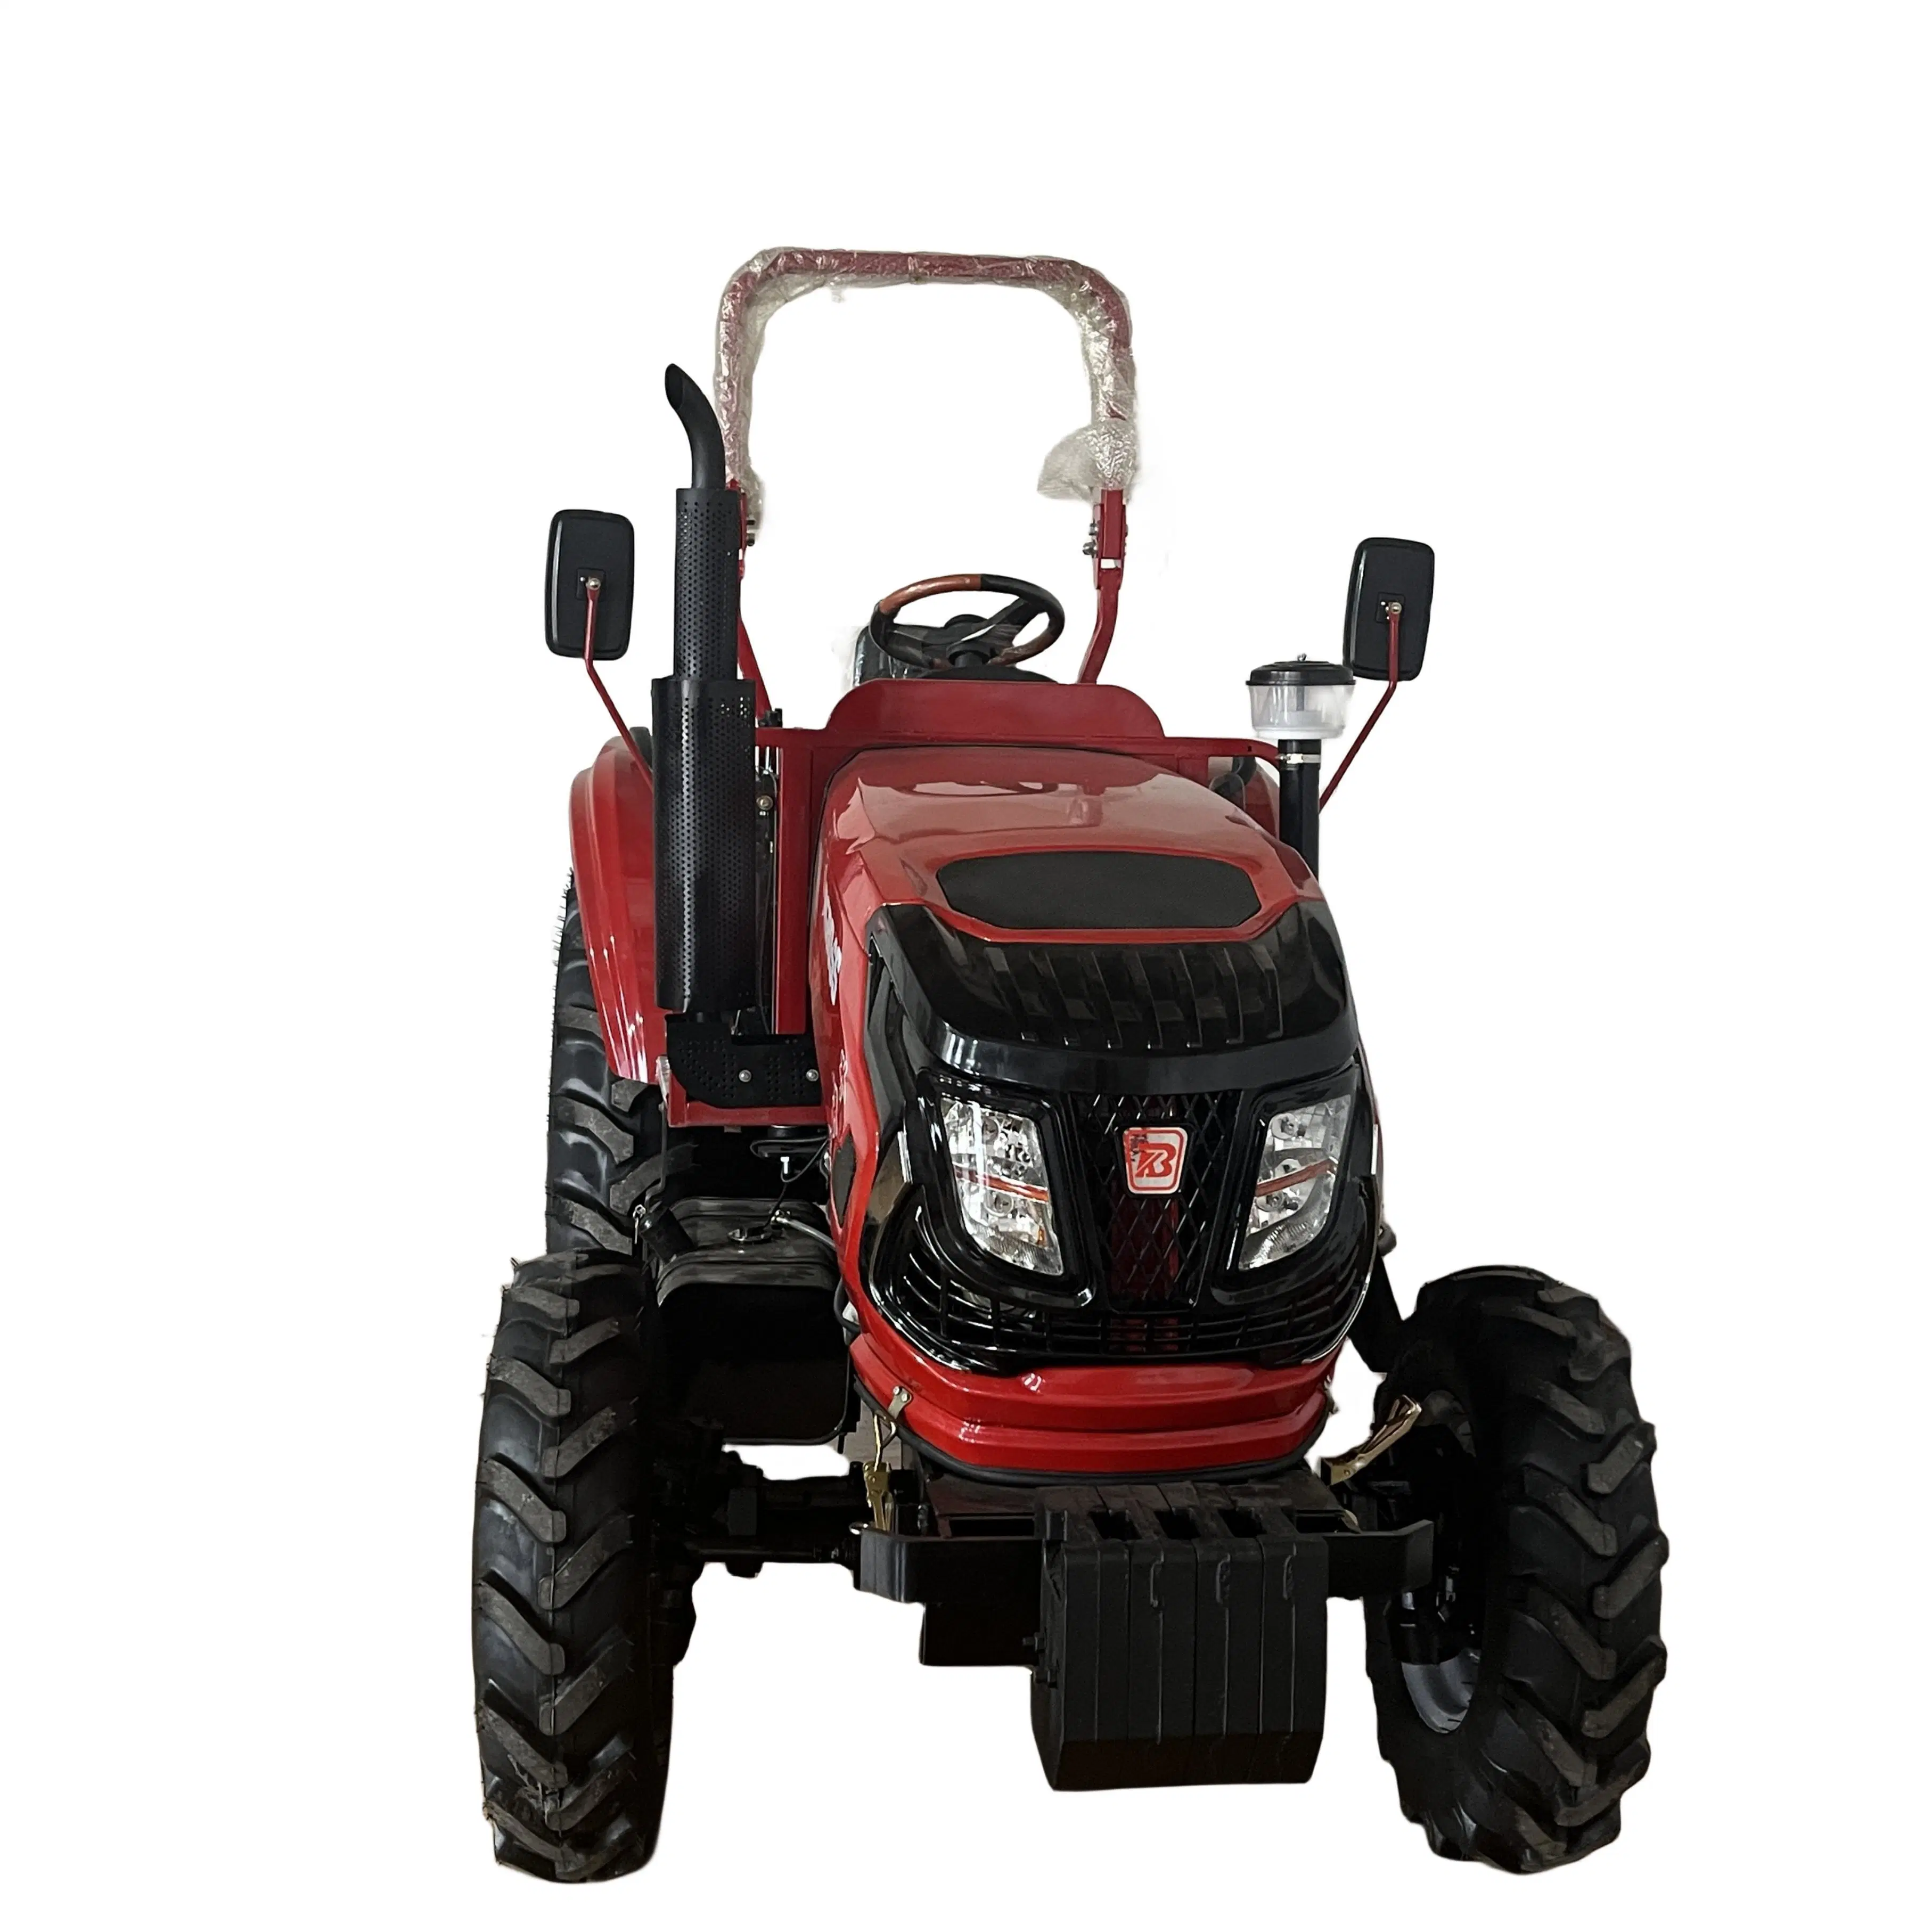 Novo design de máquinas agrícolas 4X4 Jardim da Roda Orchard 60HP 70HP Trator com Certificado CE